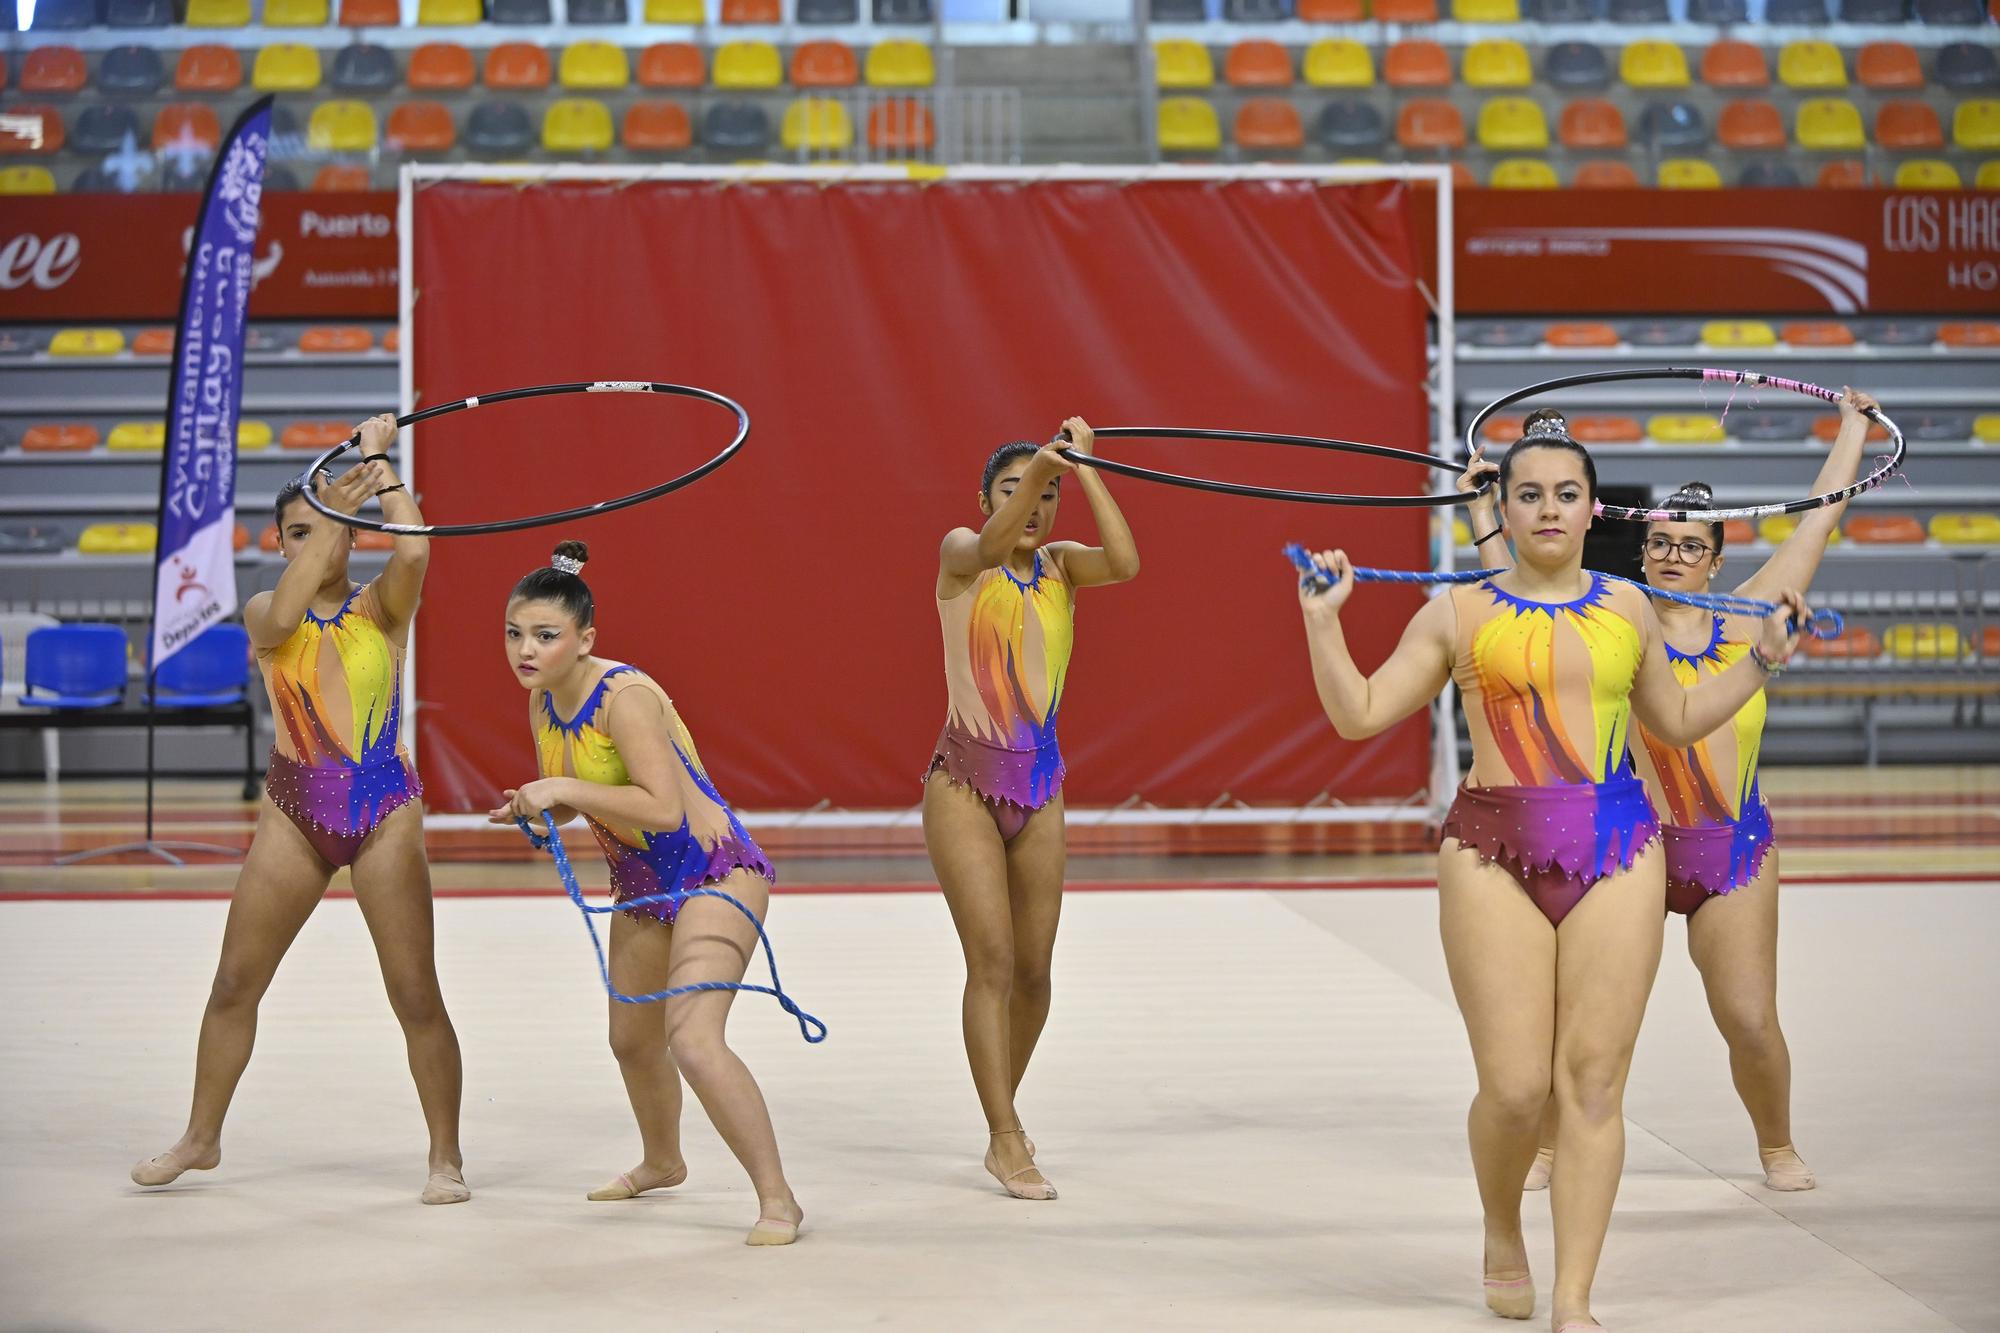 Encuentro de escuelas de gimnasia rítmica en el Palacio de los Deportes de Cartagena